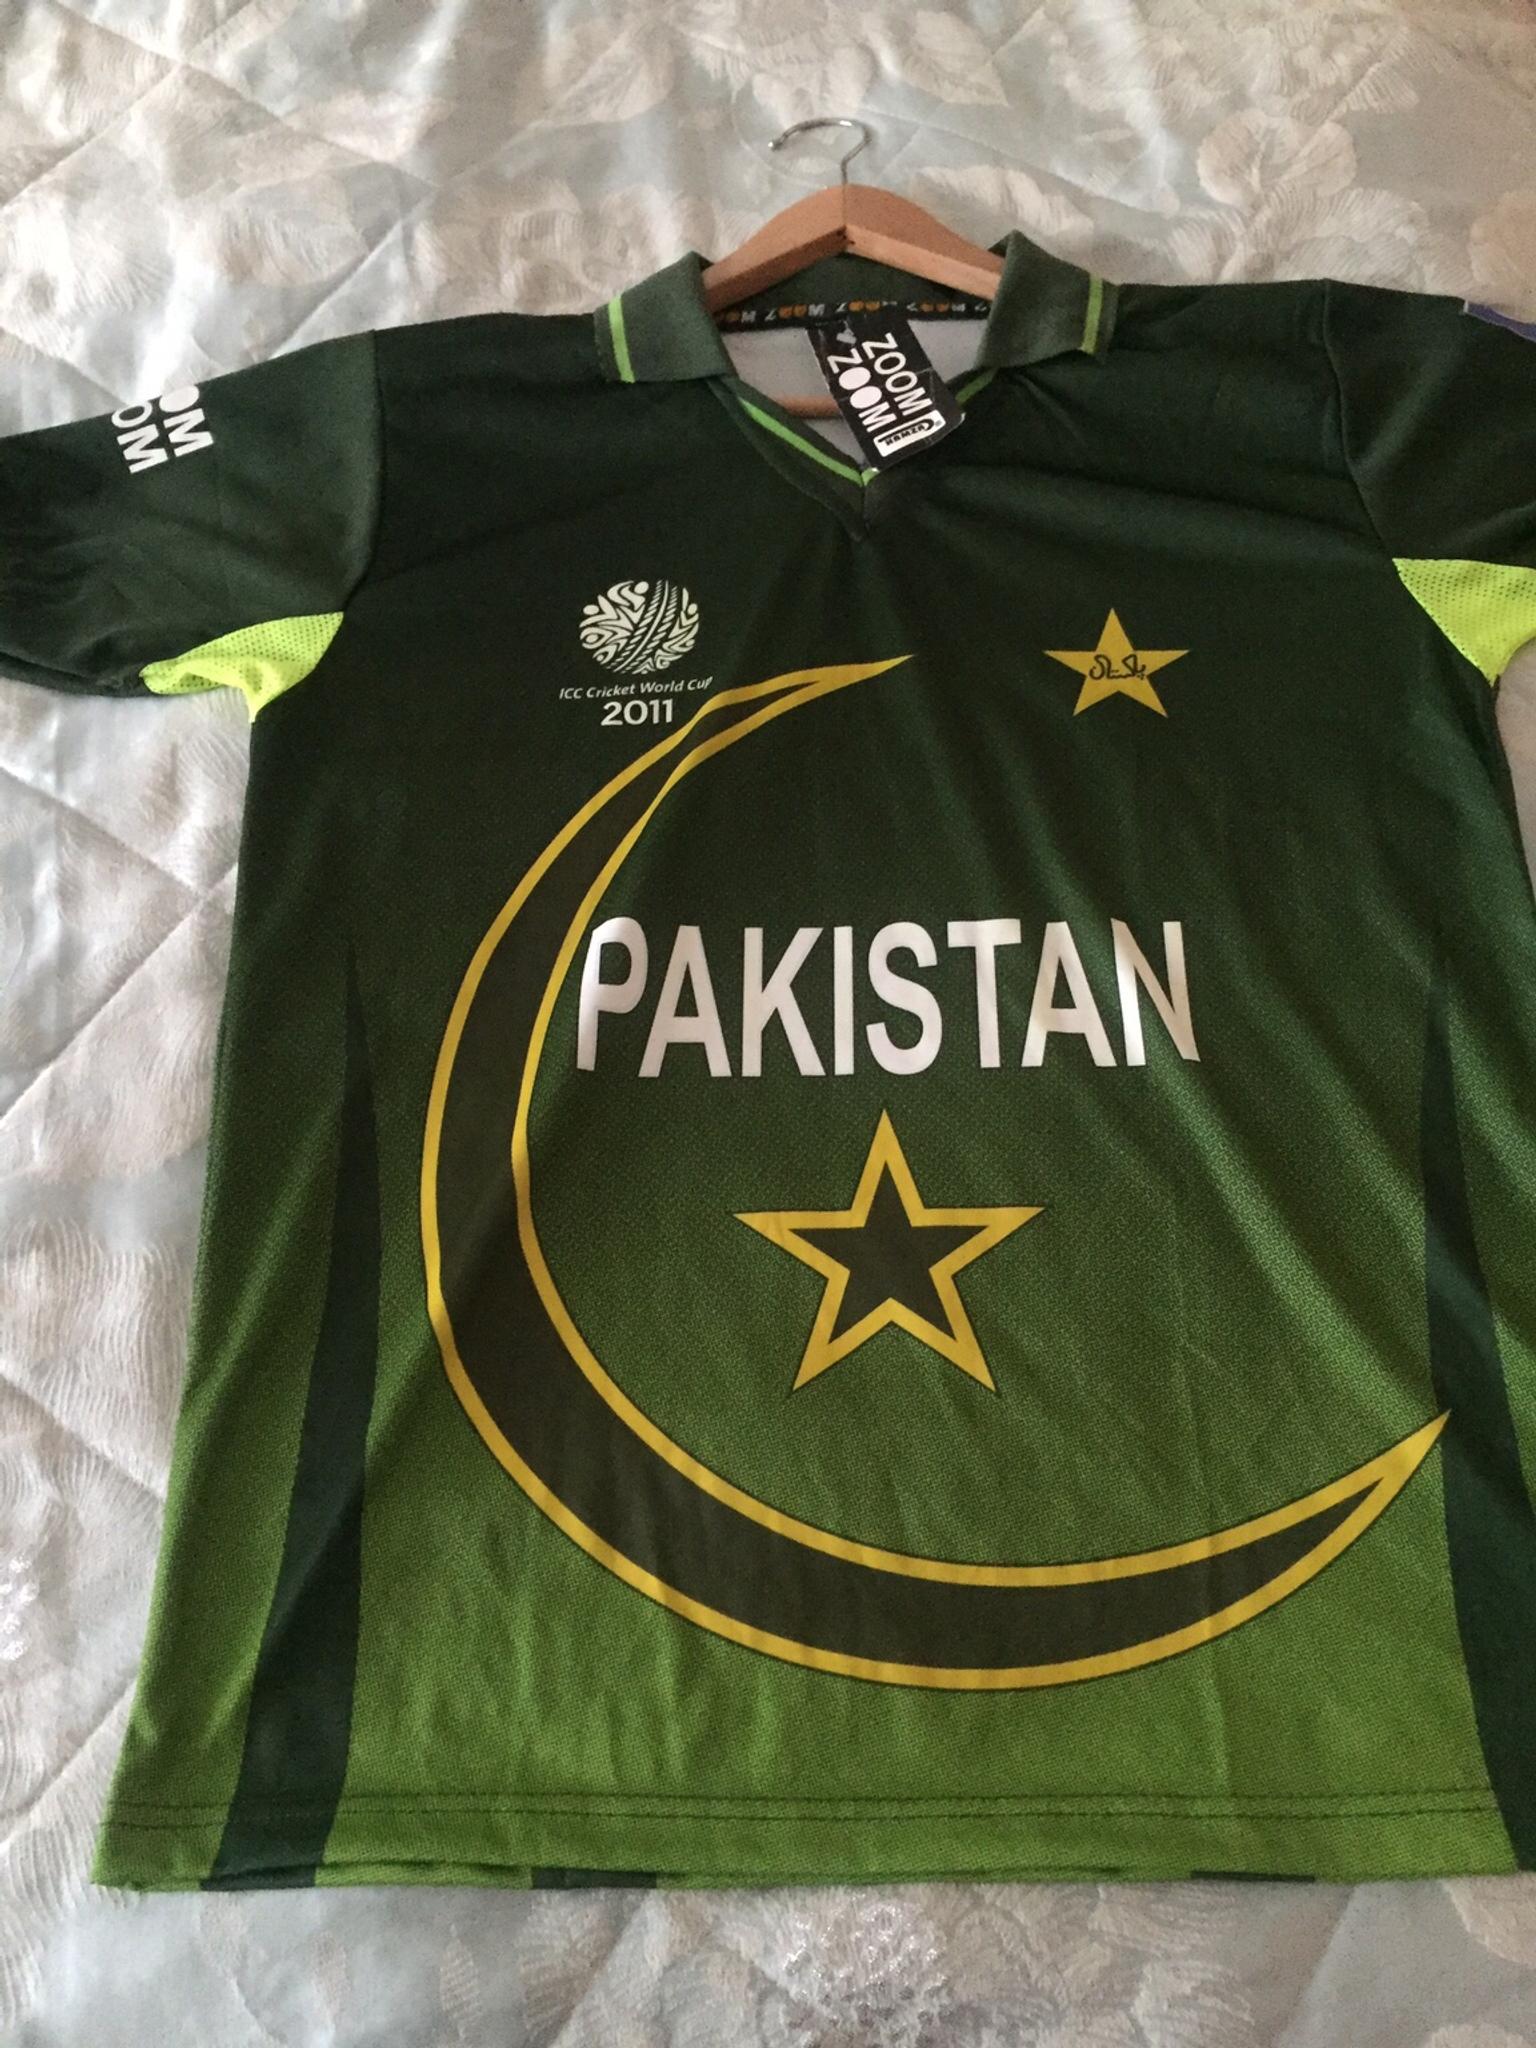 cricket world cup shirt